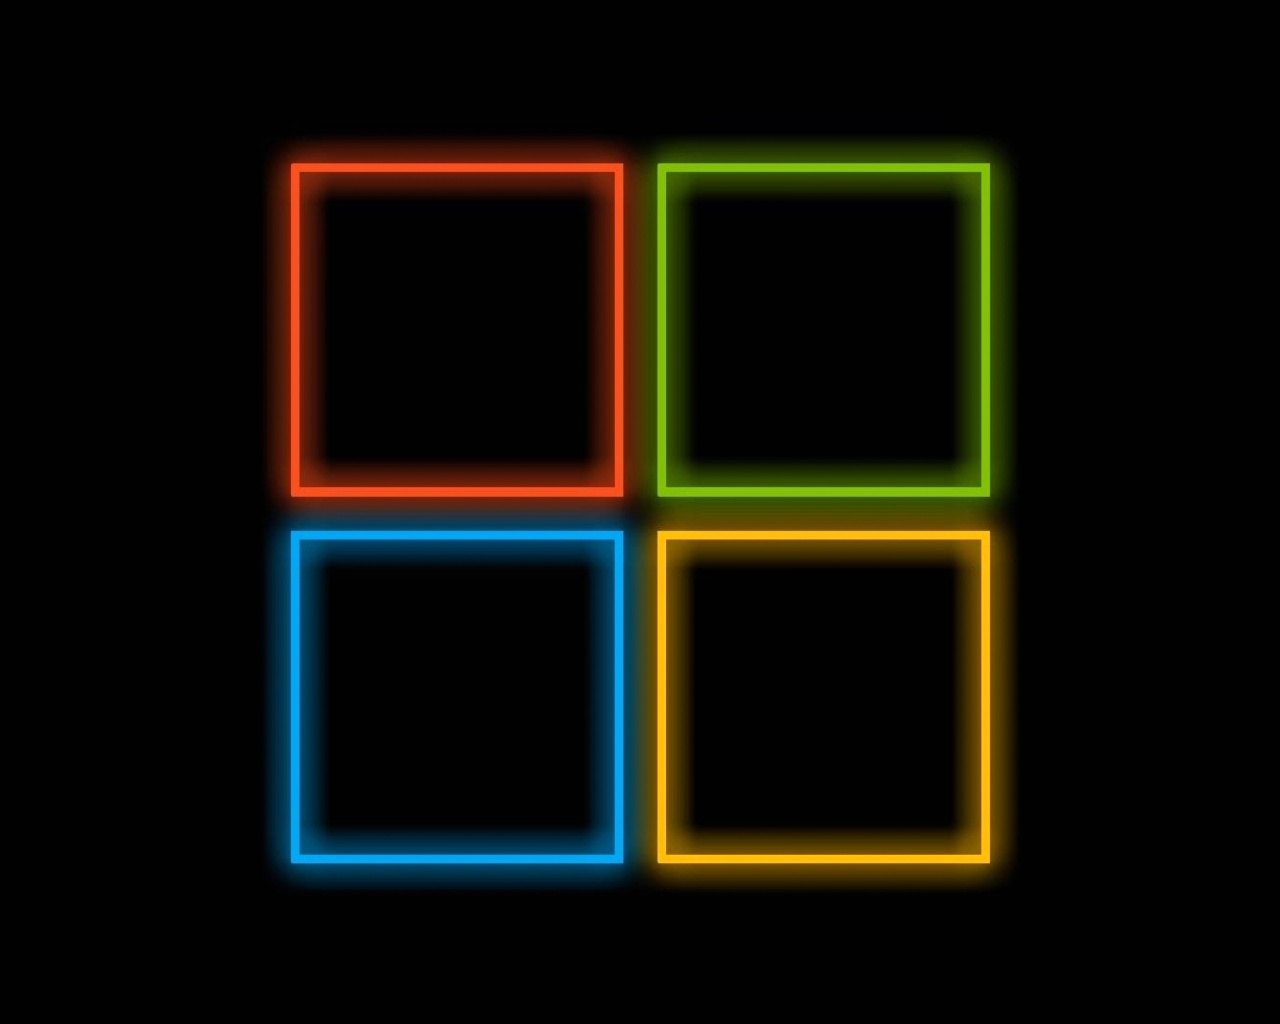 Das OS Windows 10 Neon Wallpaper 1280x1024